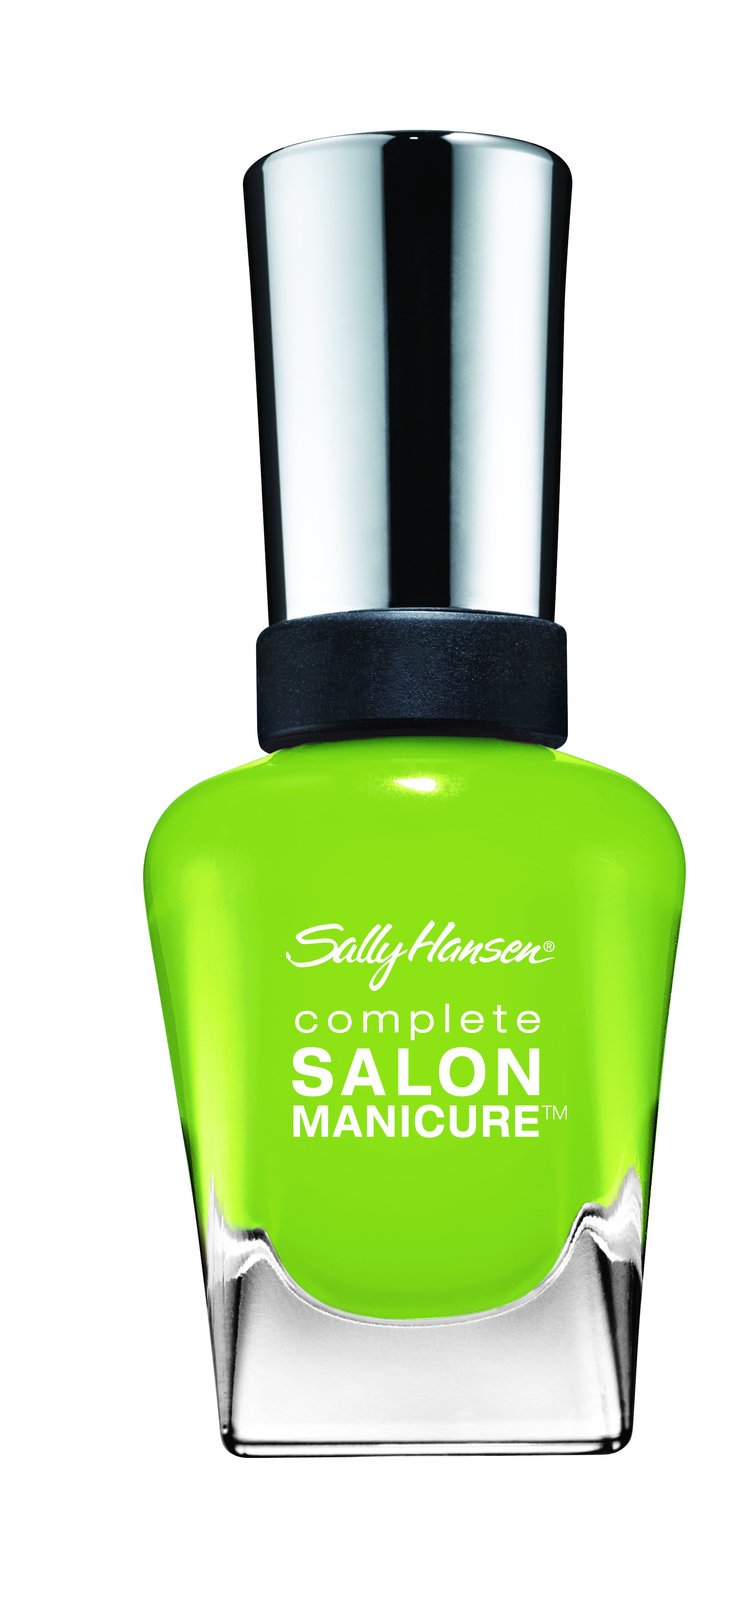 Complete Salon Manicure, odstín 430, Sally Hansen, info o ceně v obchodě.